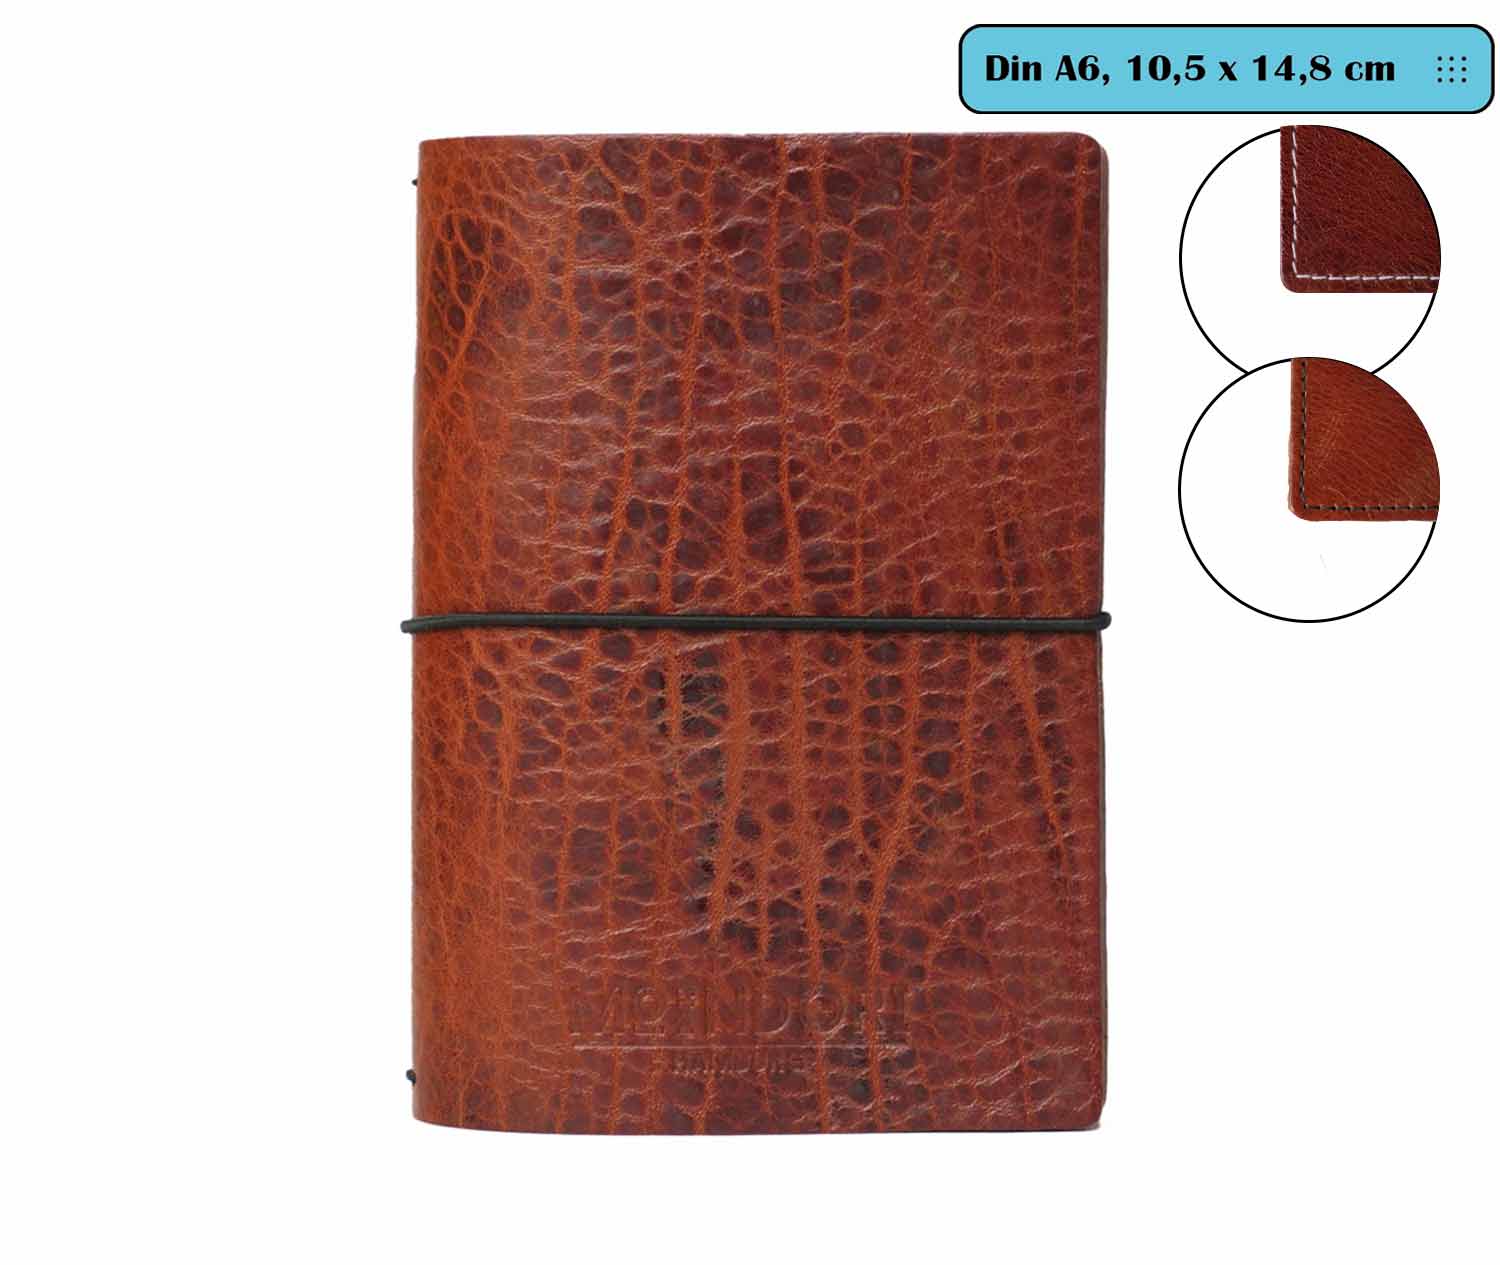 DIN A6 - Travelers Notebook  - Vintage - Echtleder